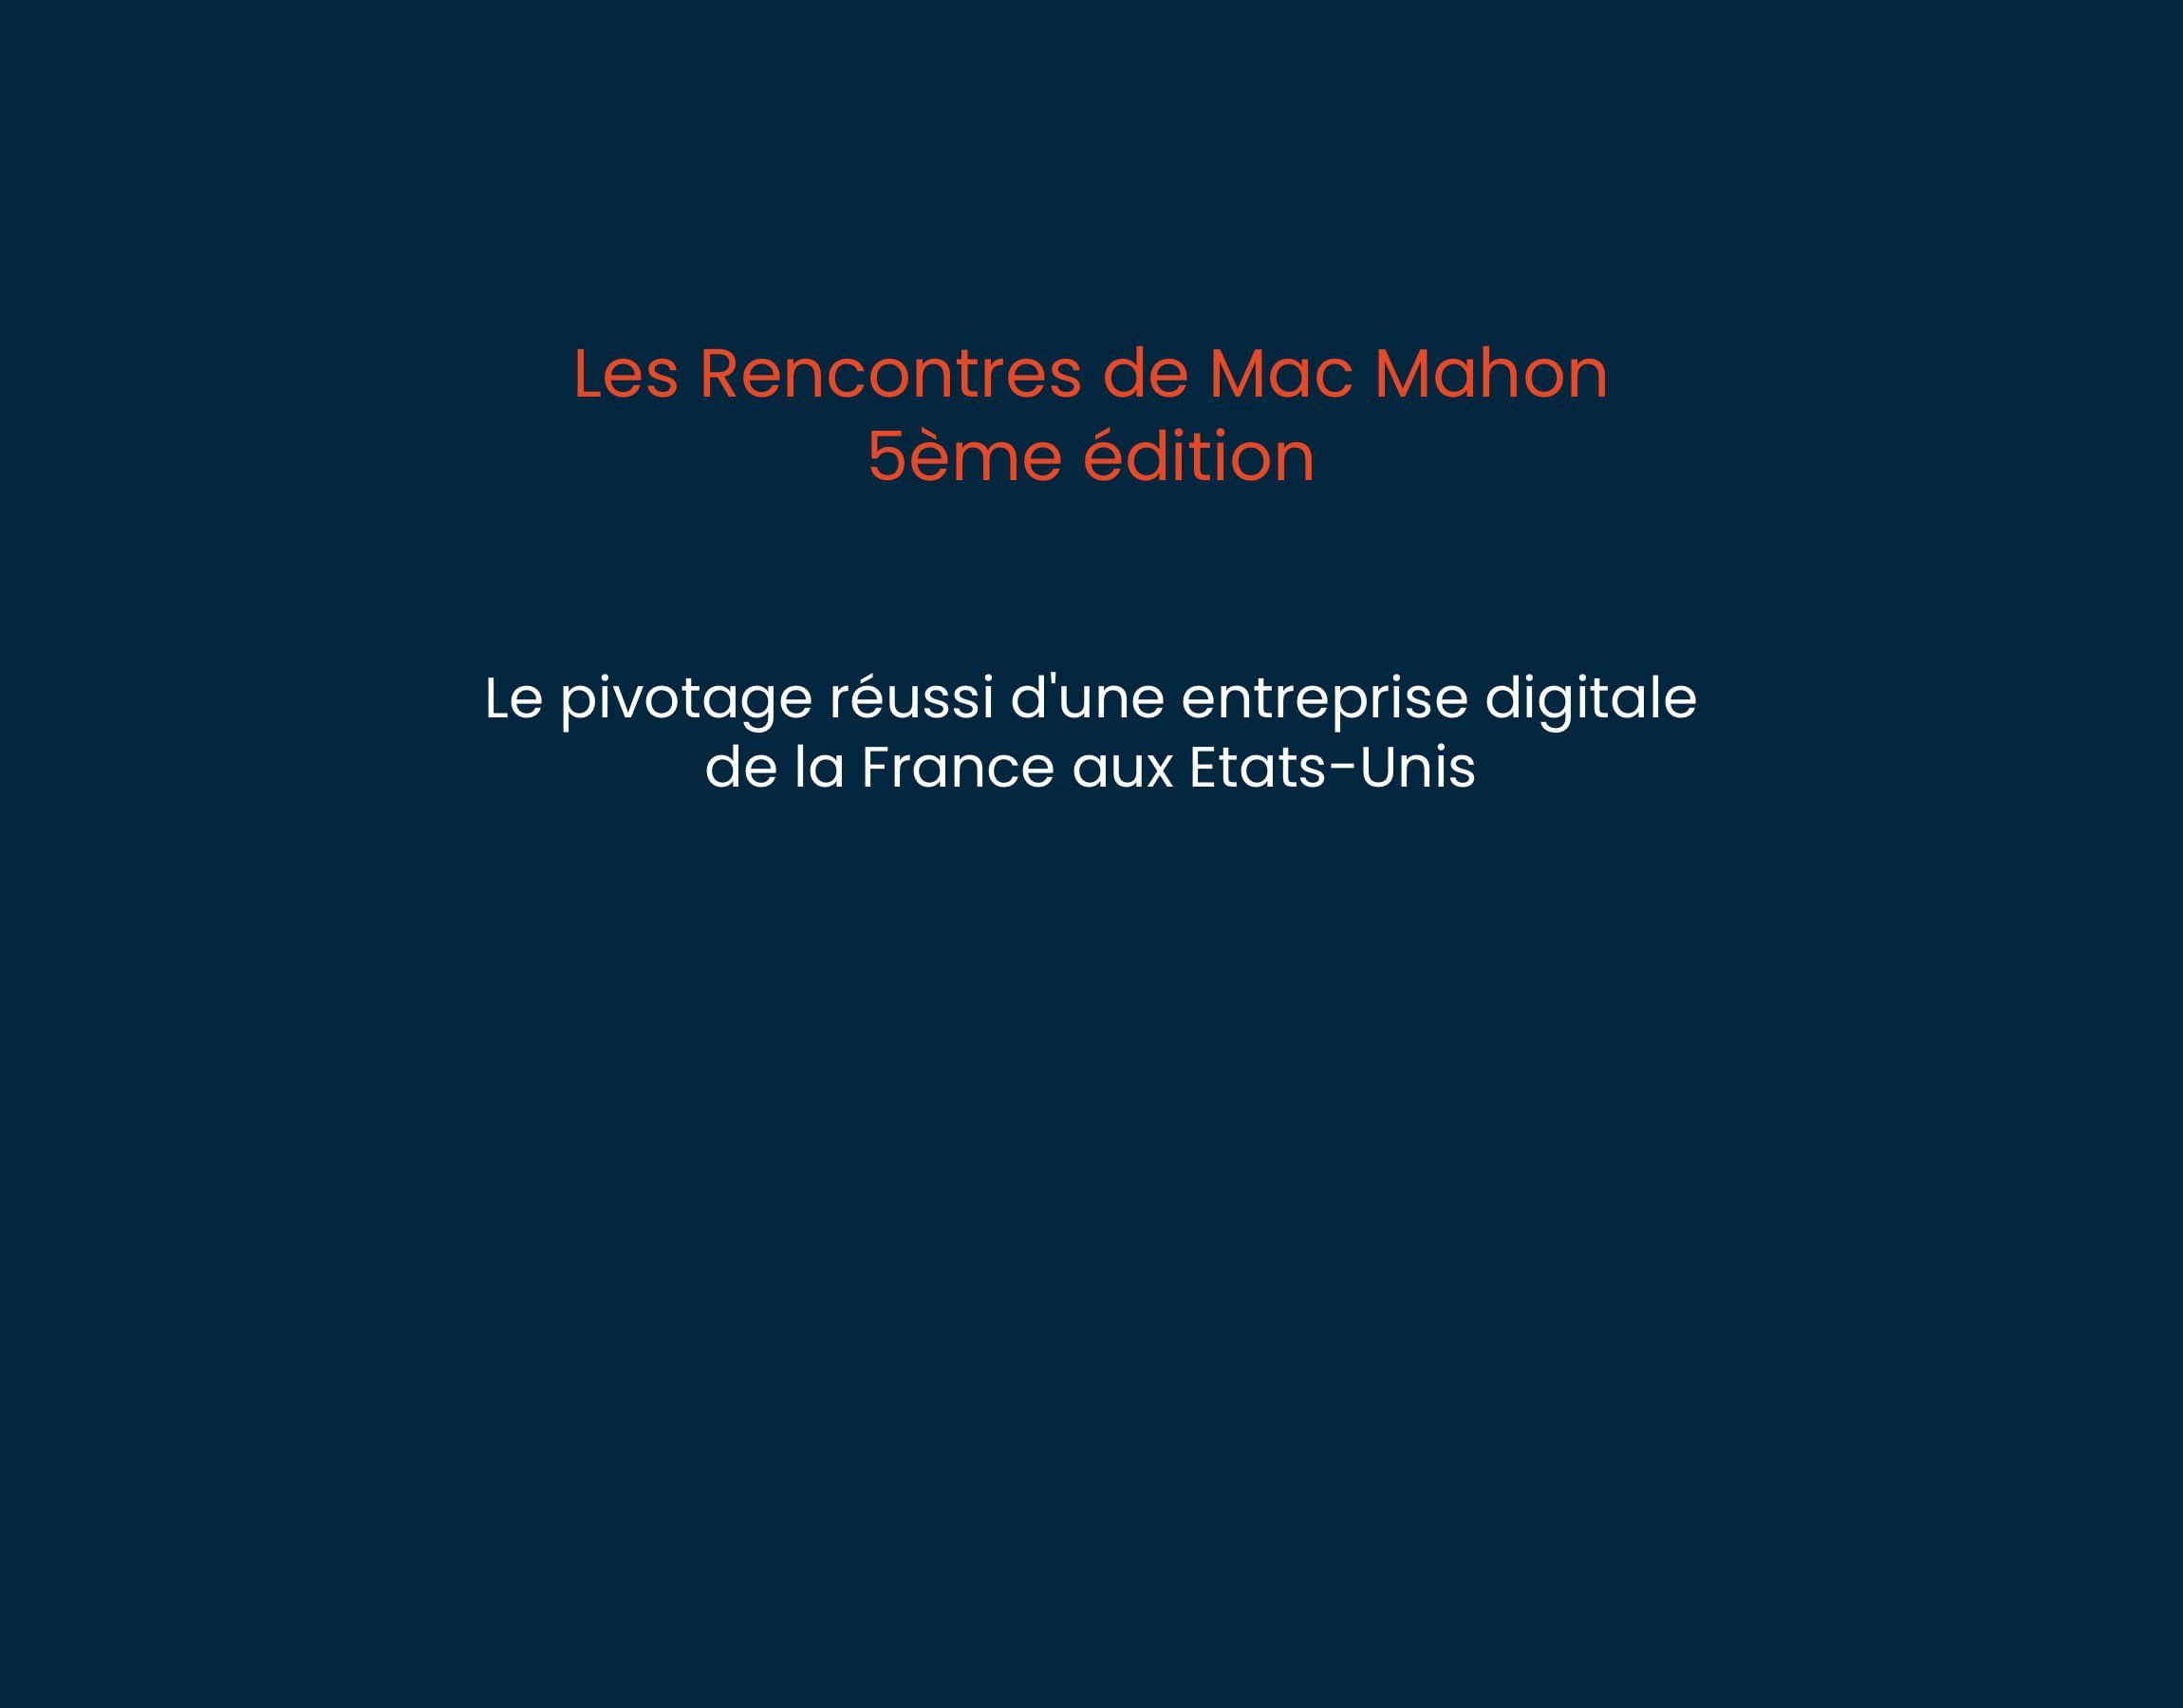 Les Rencontres De Mac Mahon 5 Cover